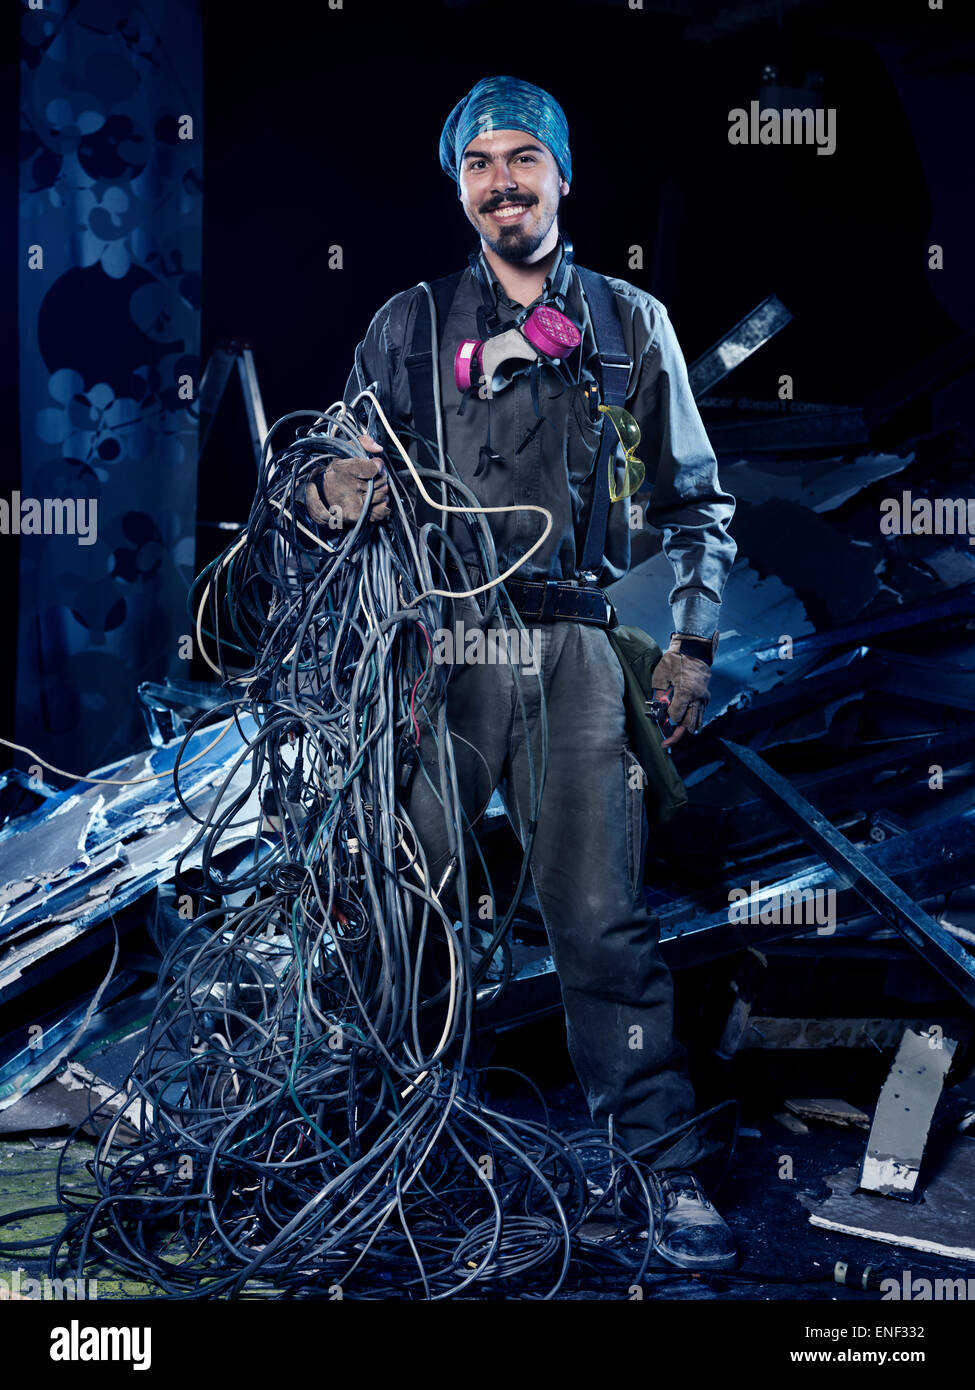 Contratista eléctrica sonriente en el trabajo con un montón de cables retrato artístico Foto de stock